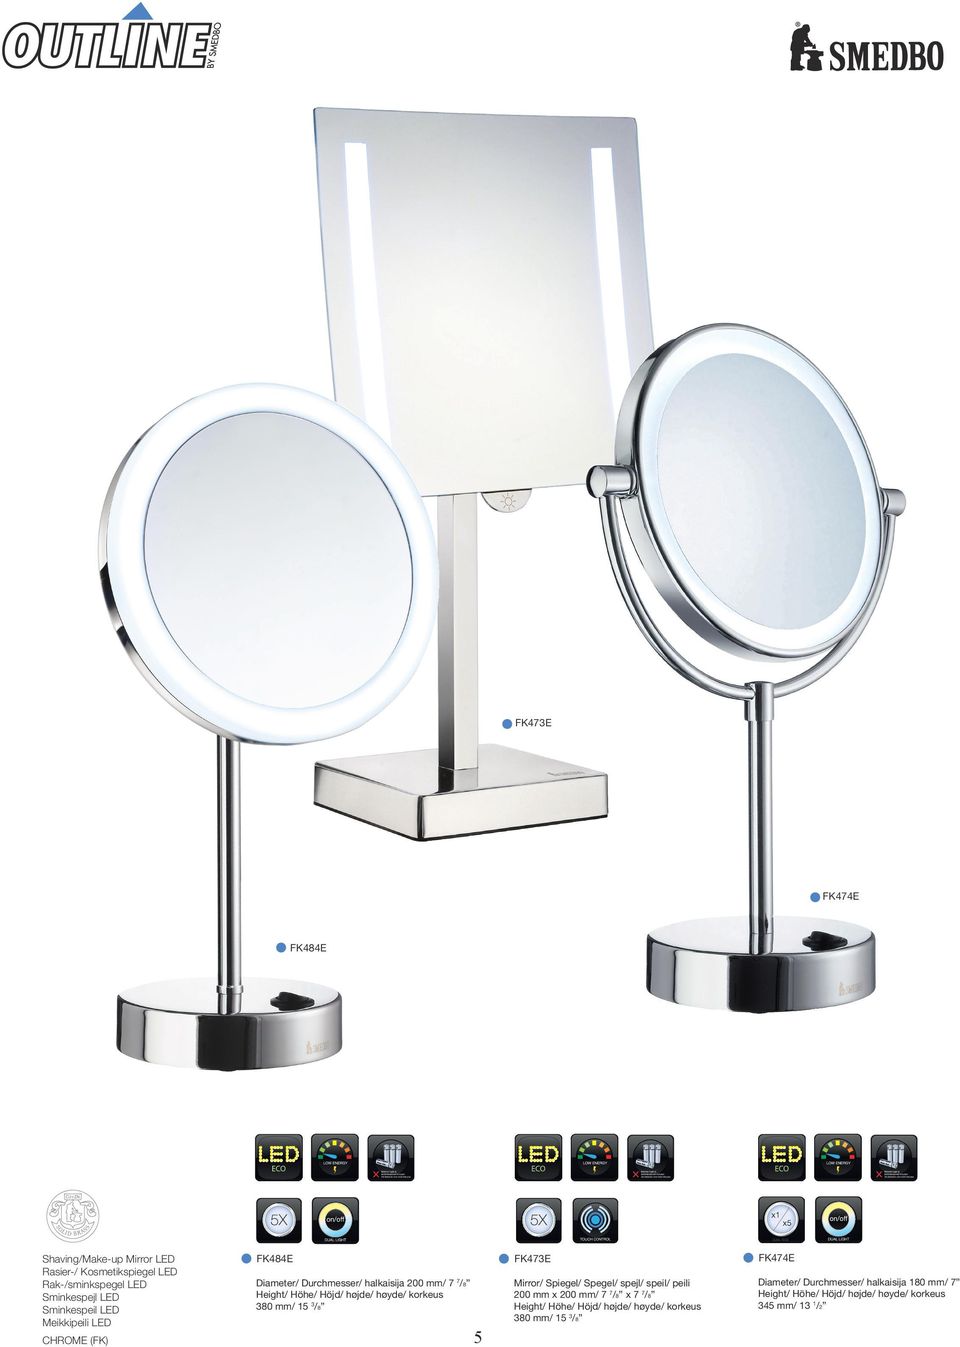 høyde/ korkeus 380 mm/ 15 3/8 Mirror/ Spiegel/ Spegel/ spejl/ speil/ peili 200 mm x 200 mm/ 7 7/8 x 7 7/8 Height/ Höhe/ Höjd/